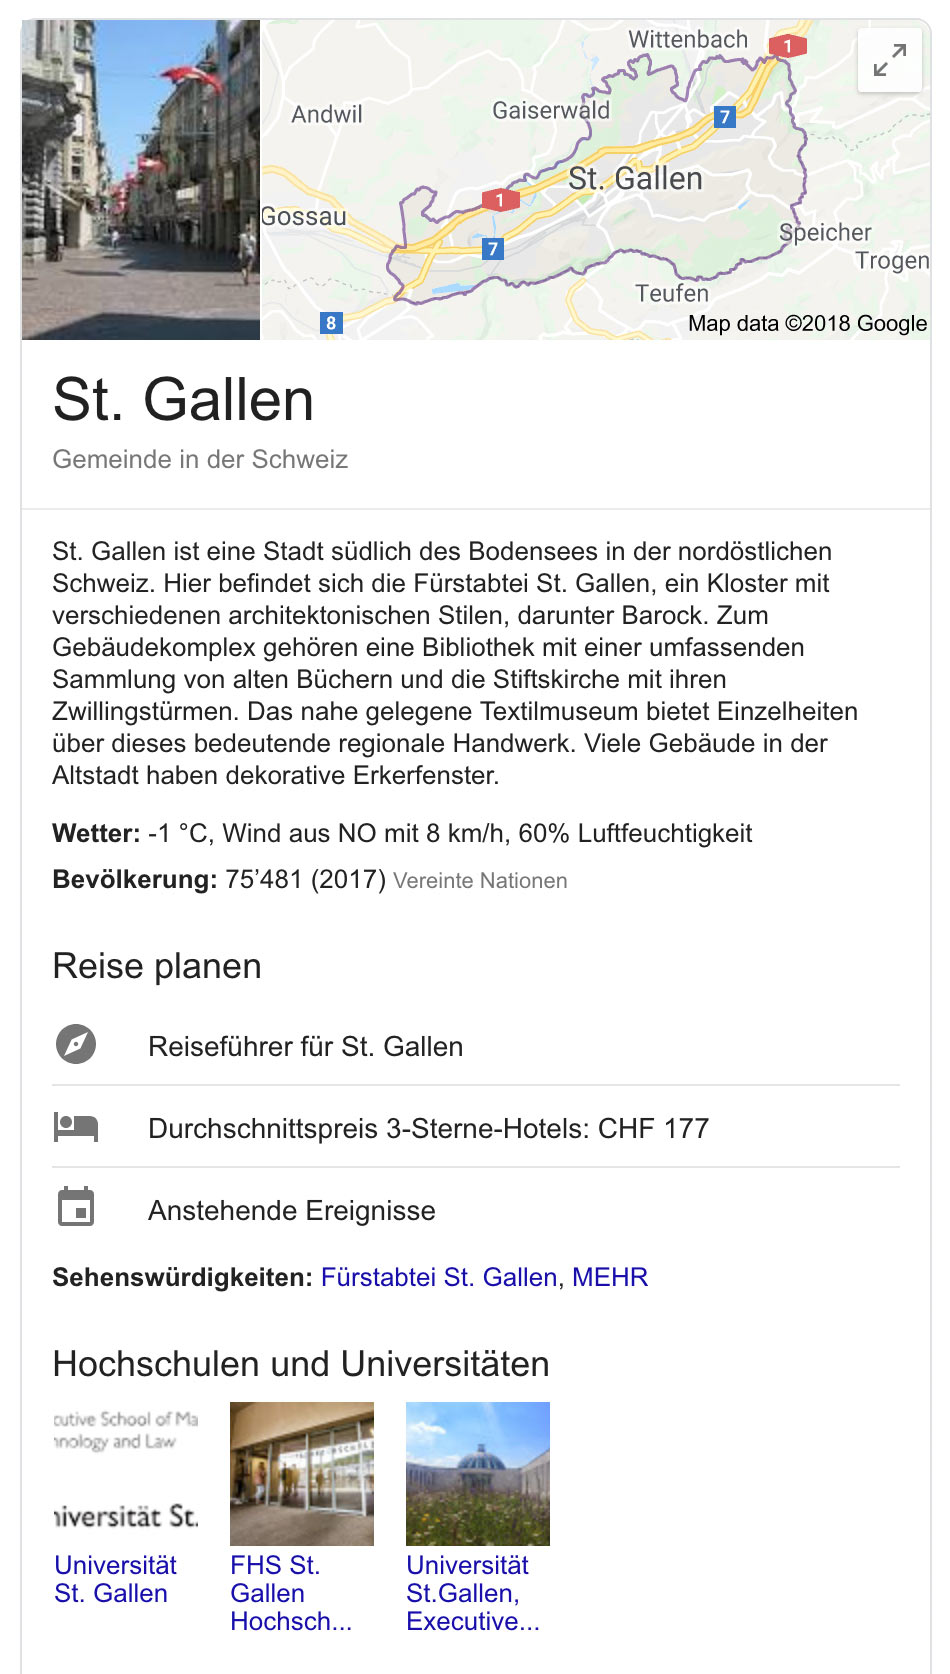 google snippet werbung rupperswil 2 - Google macht Werbung für Rupperswil AG mit einem Vierfachmörder